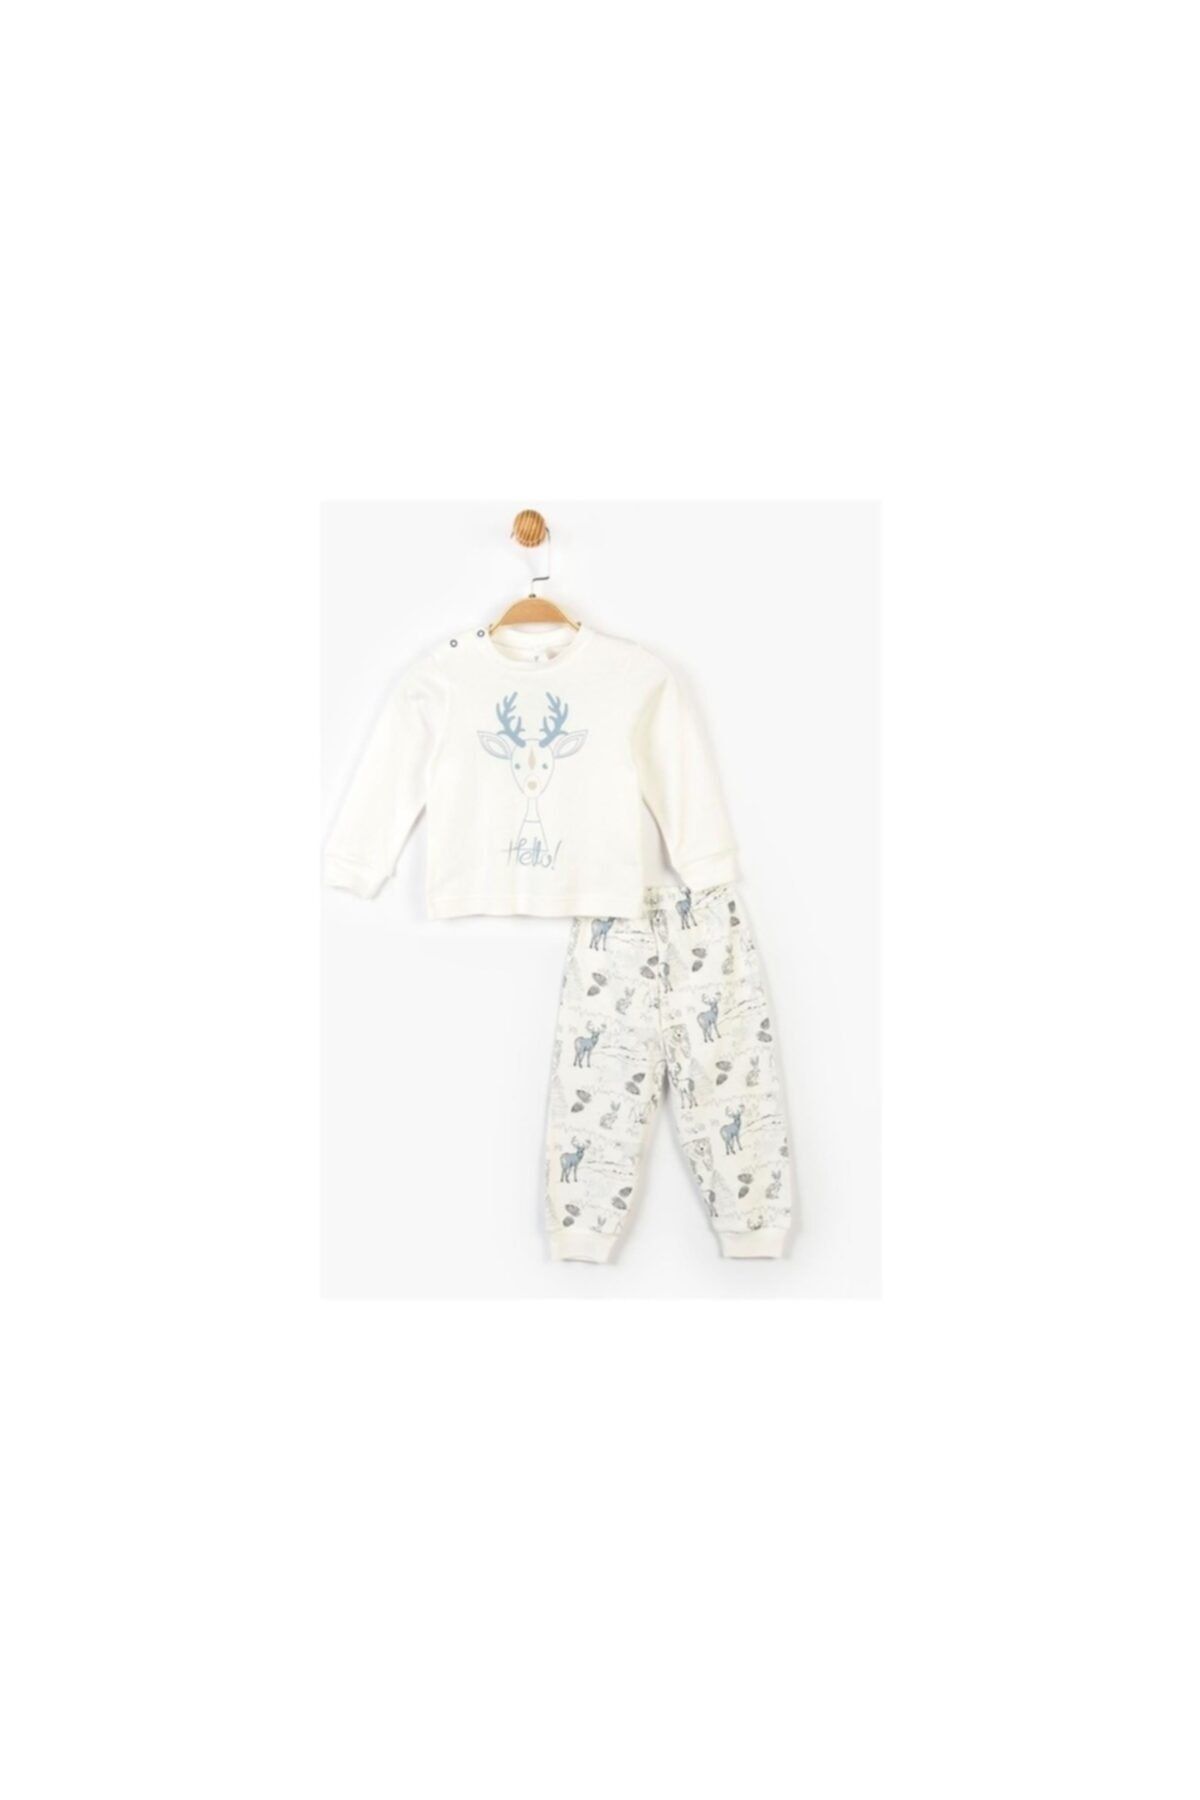 Panolino Çocuk Pijama Takımı Geyik Baskılı 2'li